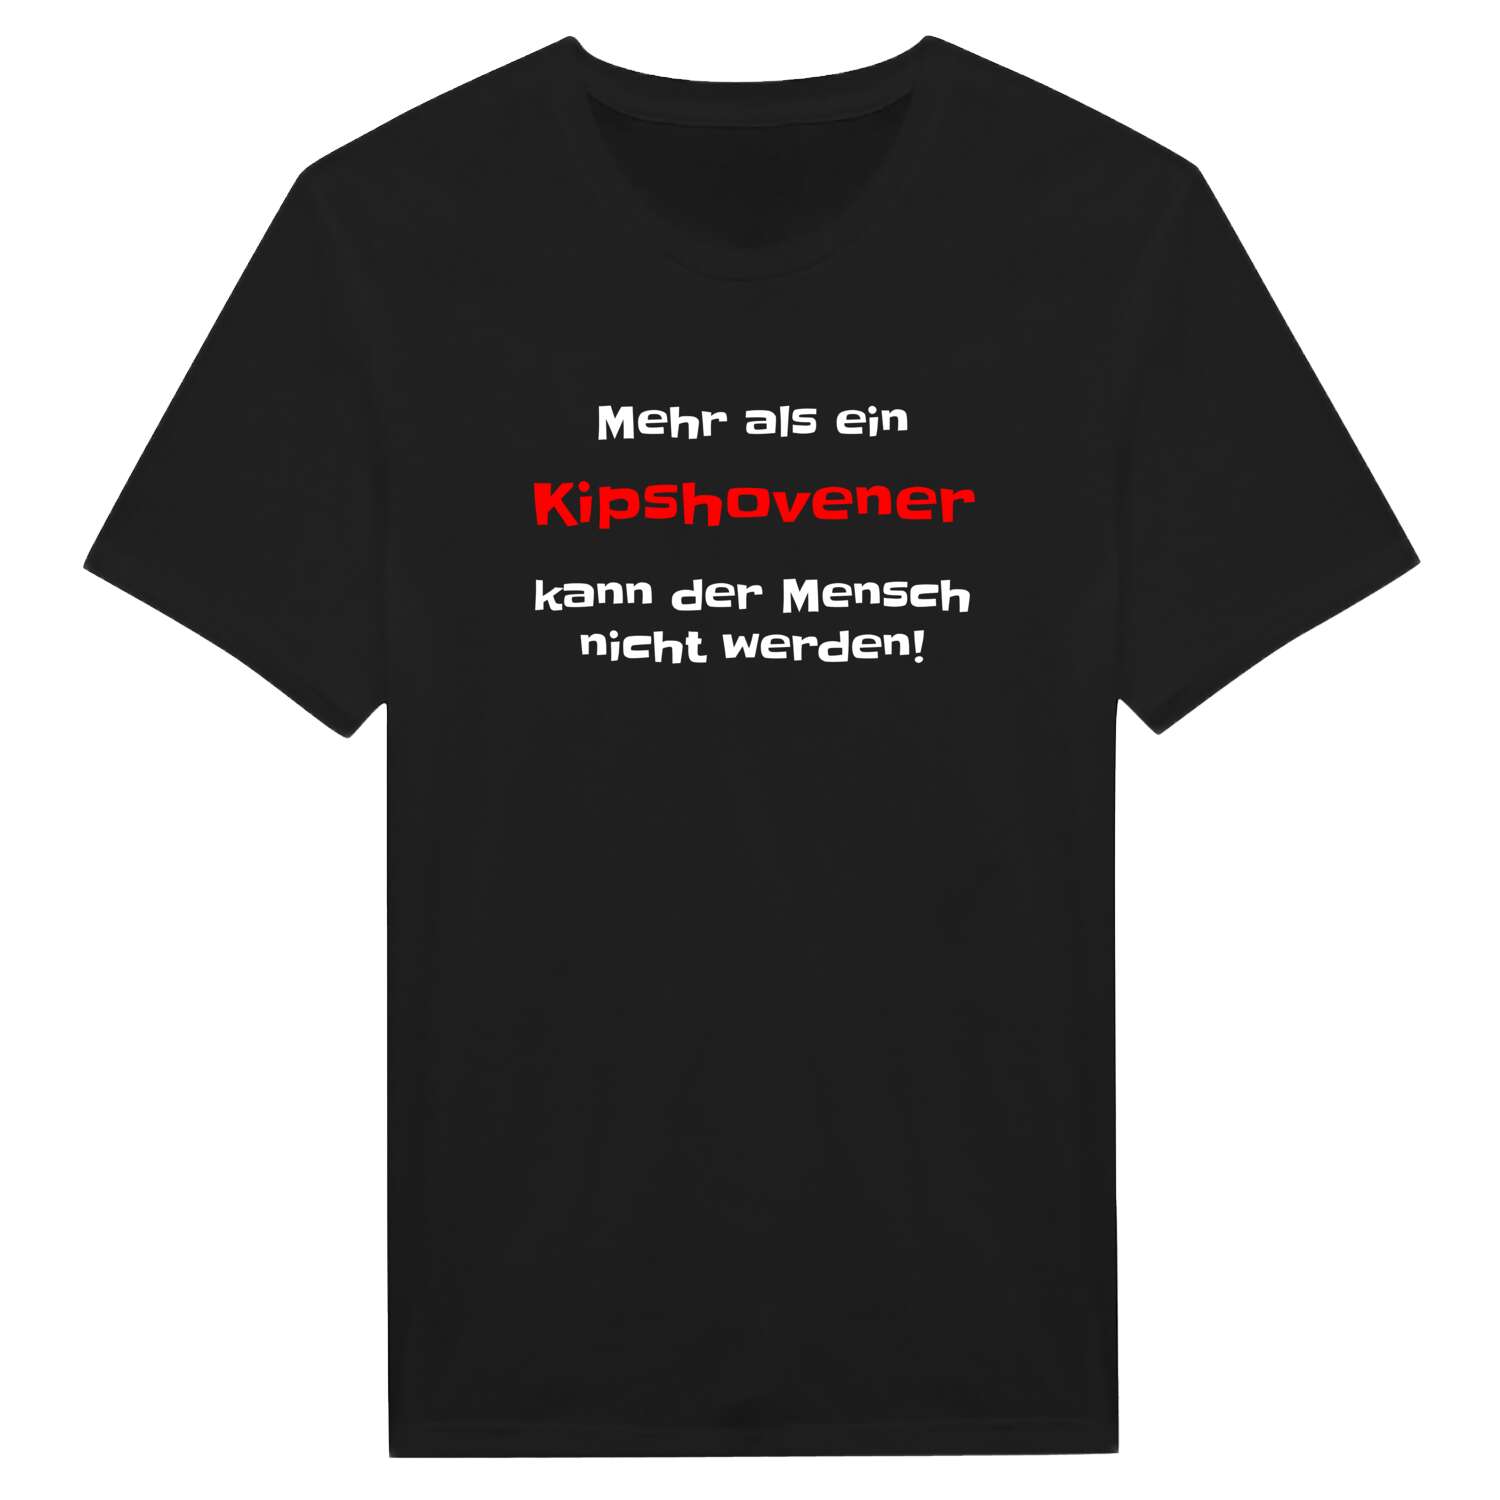 Kipshoven T-Shirt »Mehr als ein«